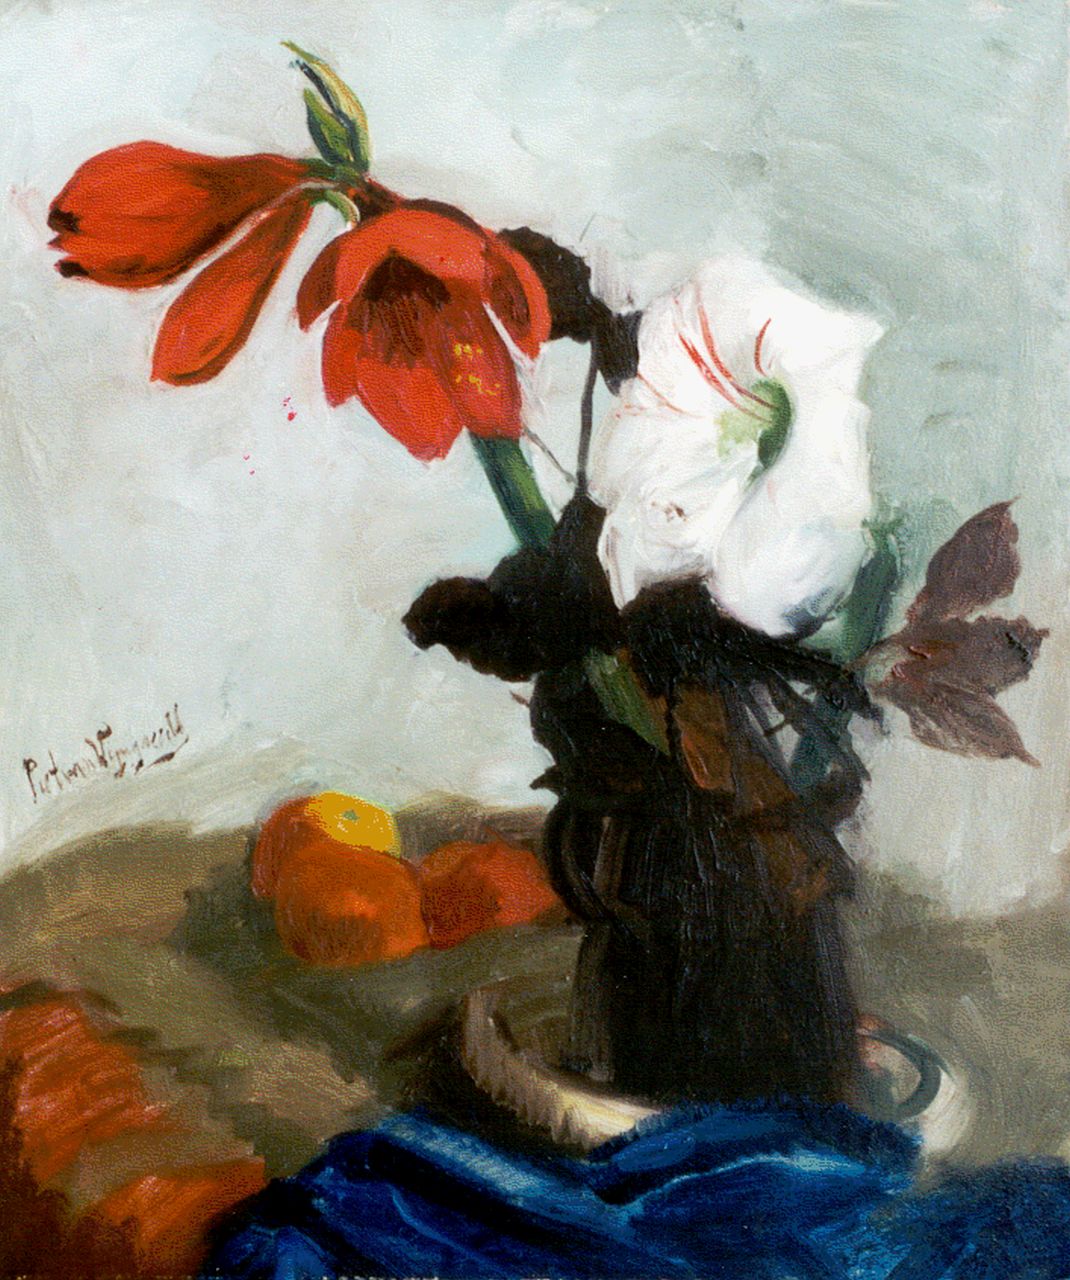 Wijngaerdt P.T. van | Petrus Theodorus 'Piet' van Wijngaerdt, Red and white amaryllis, oil on canvas 80.2 x 67.2 cm, signed l.c.